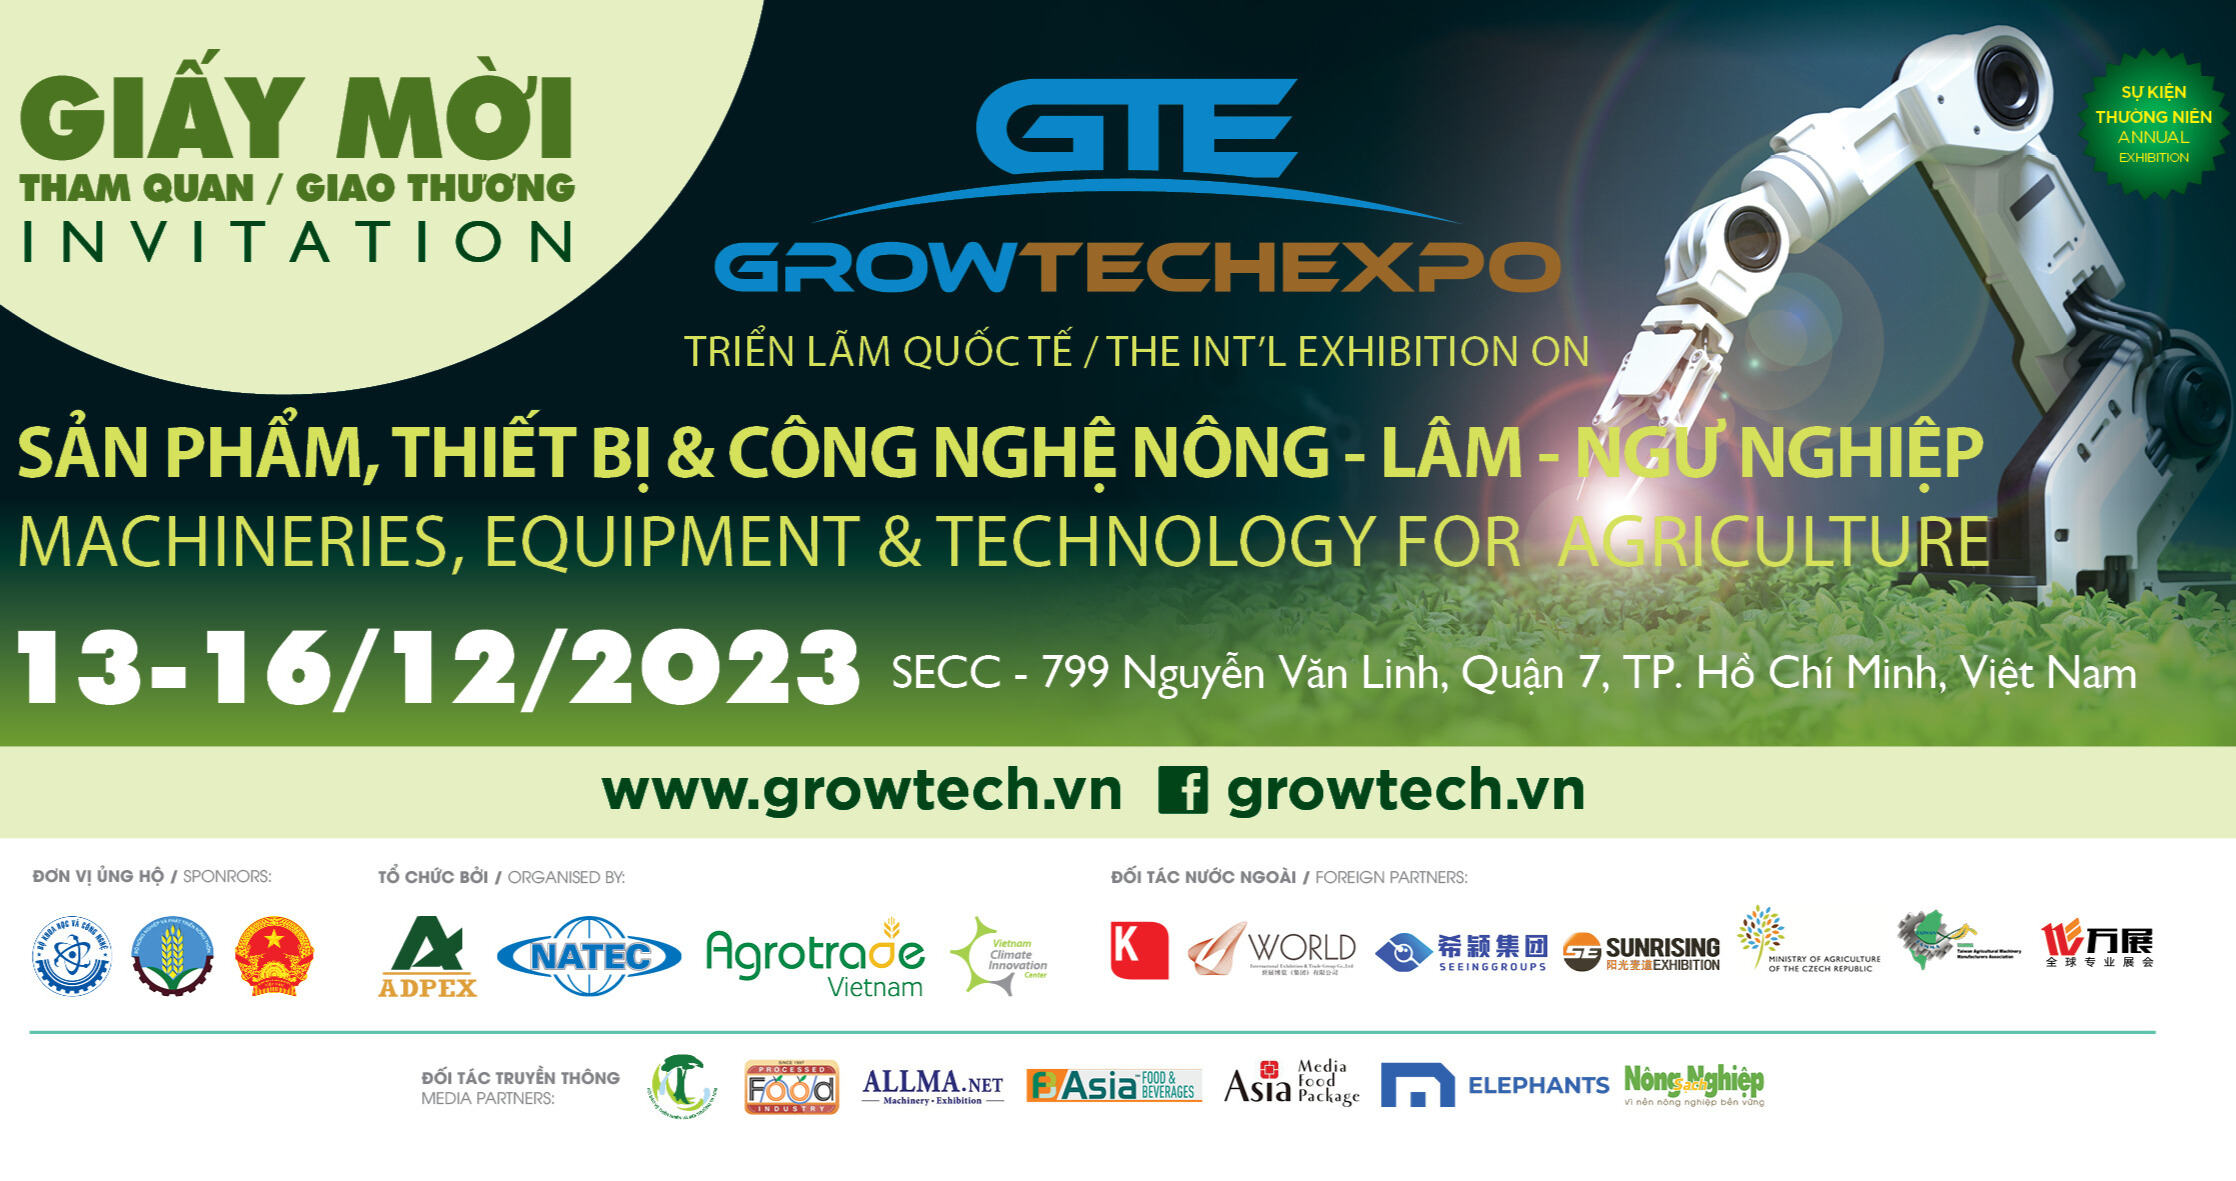 Growtech & Foodtech Vietnam 2023